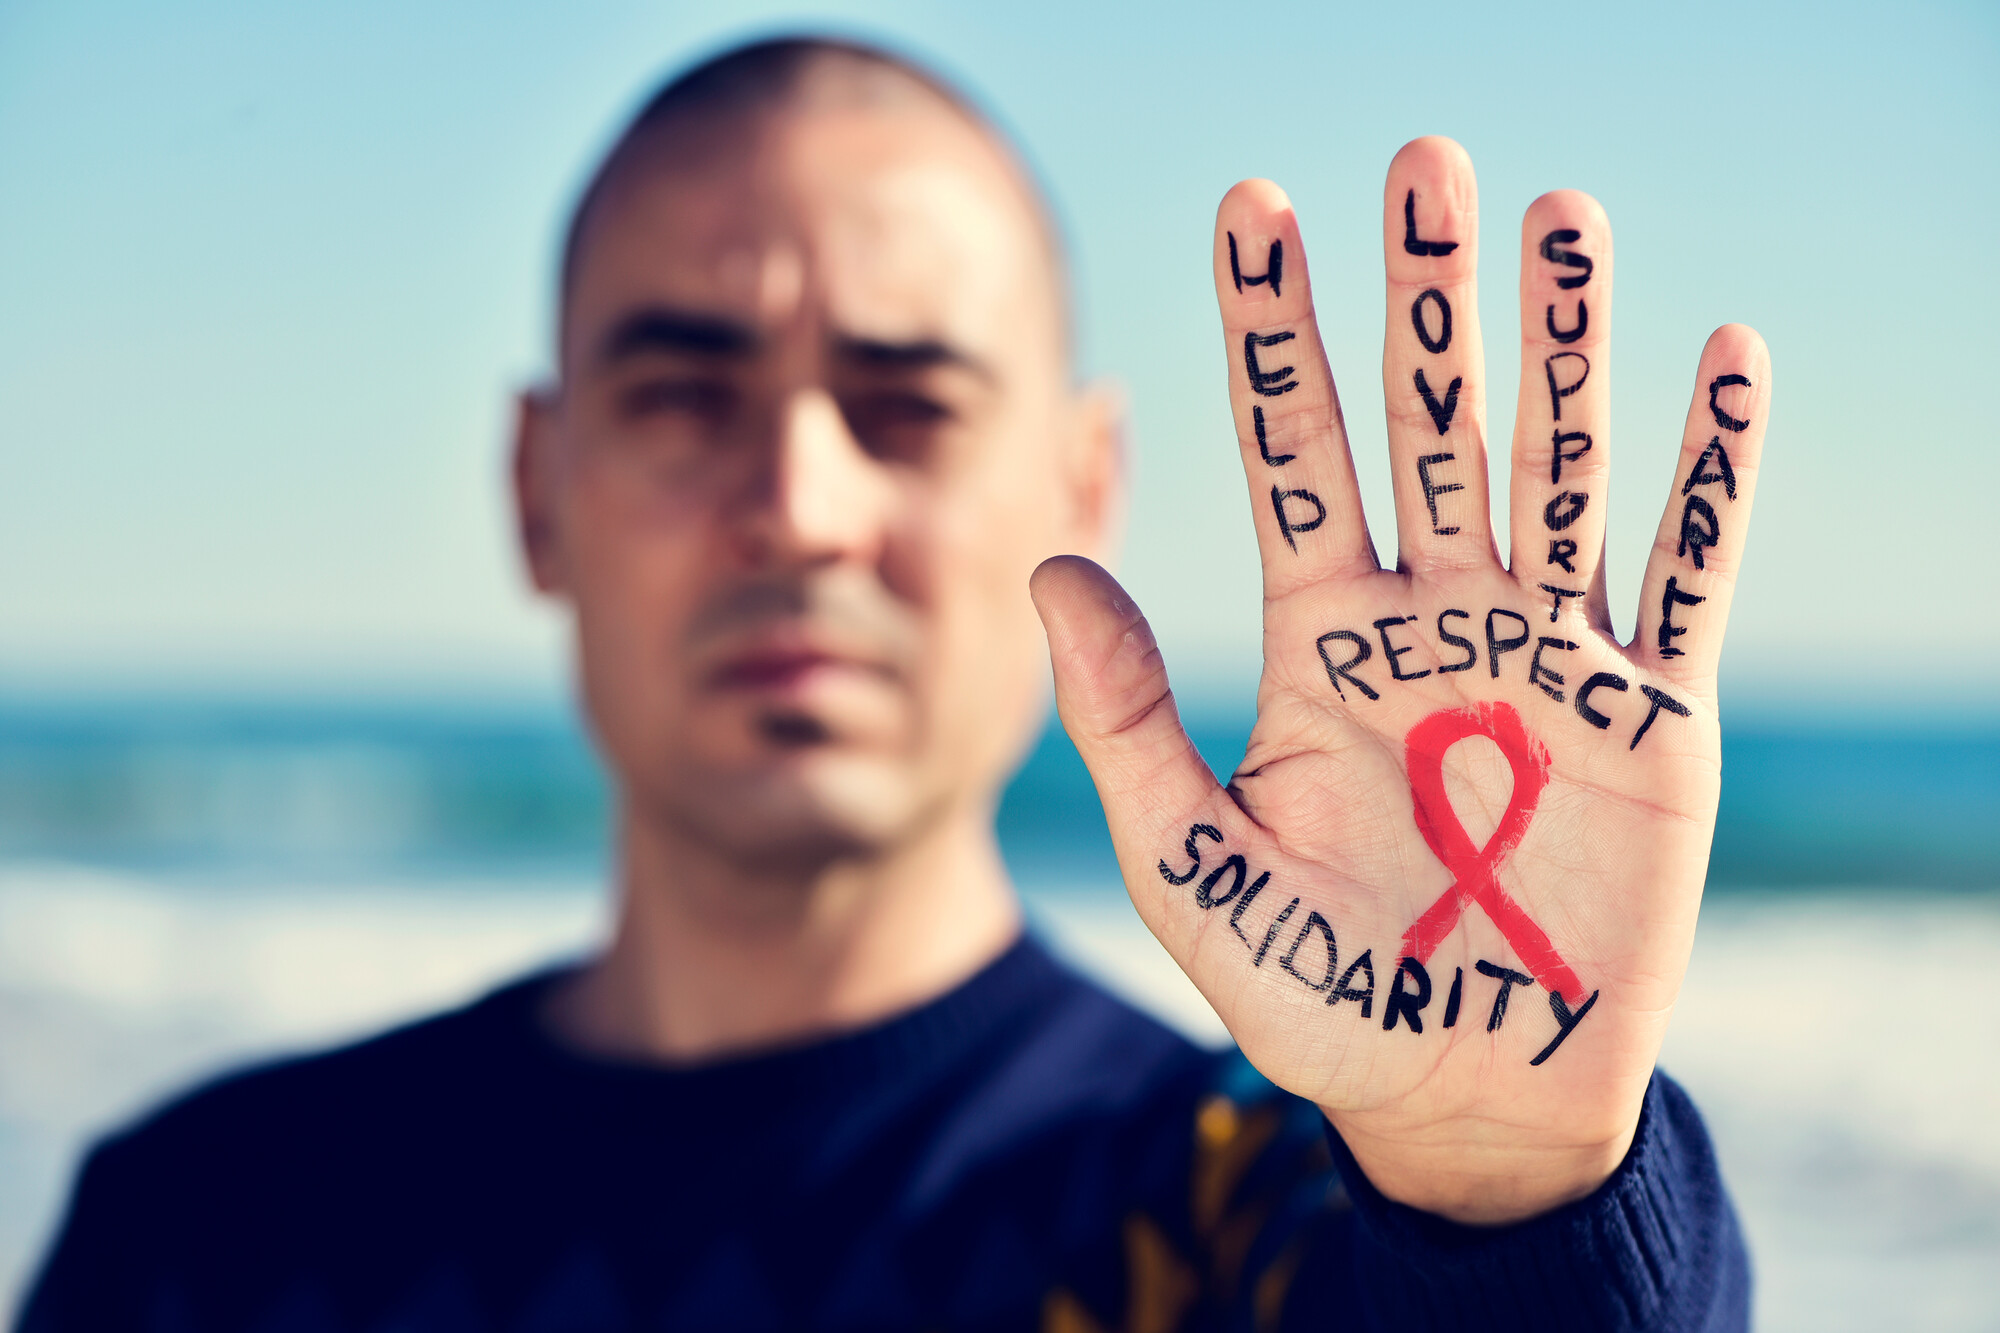 Menschen mit HIV erleben ihre Infektion immer seltener als gesundheitliche Einschränkung, sind aber weiterhin mit Ablehnung und Benachteiligung konfrontiert. Diskriminierung und Stigmatisierung finden sich auch im Gesundheitswesen.